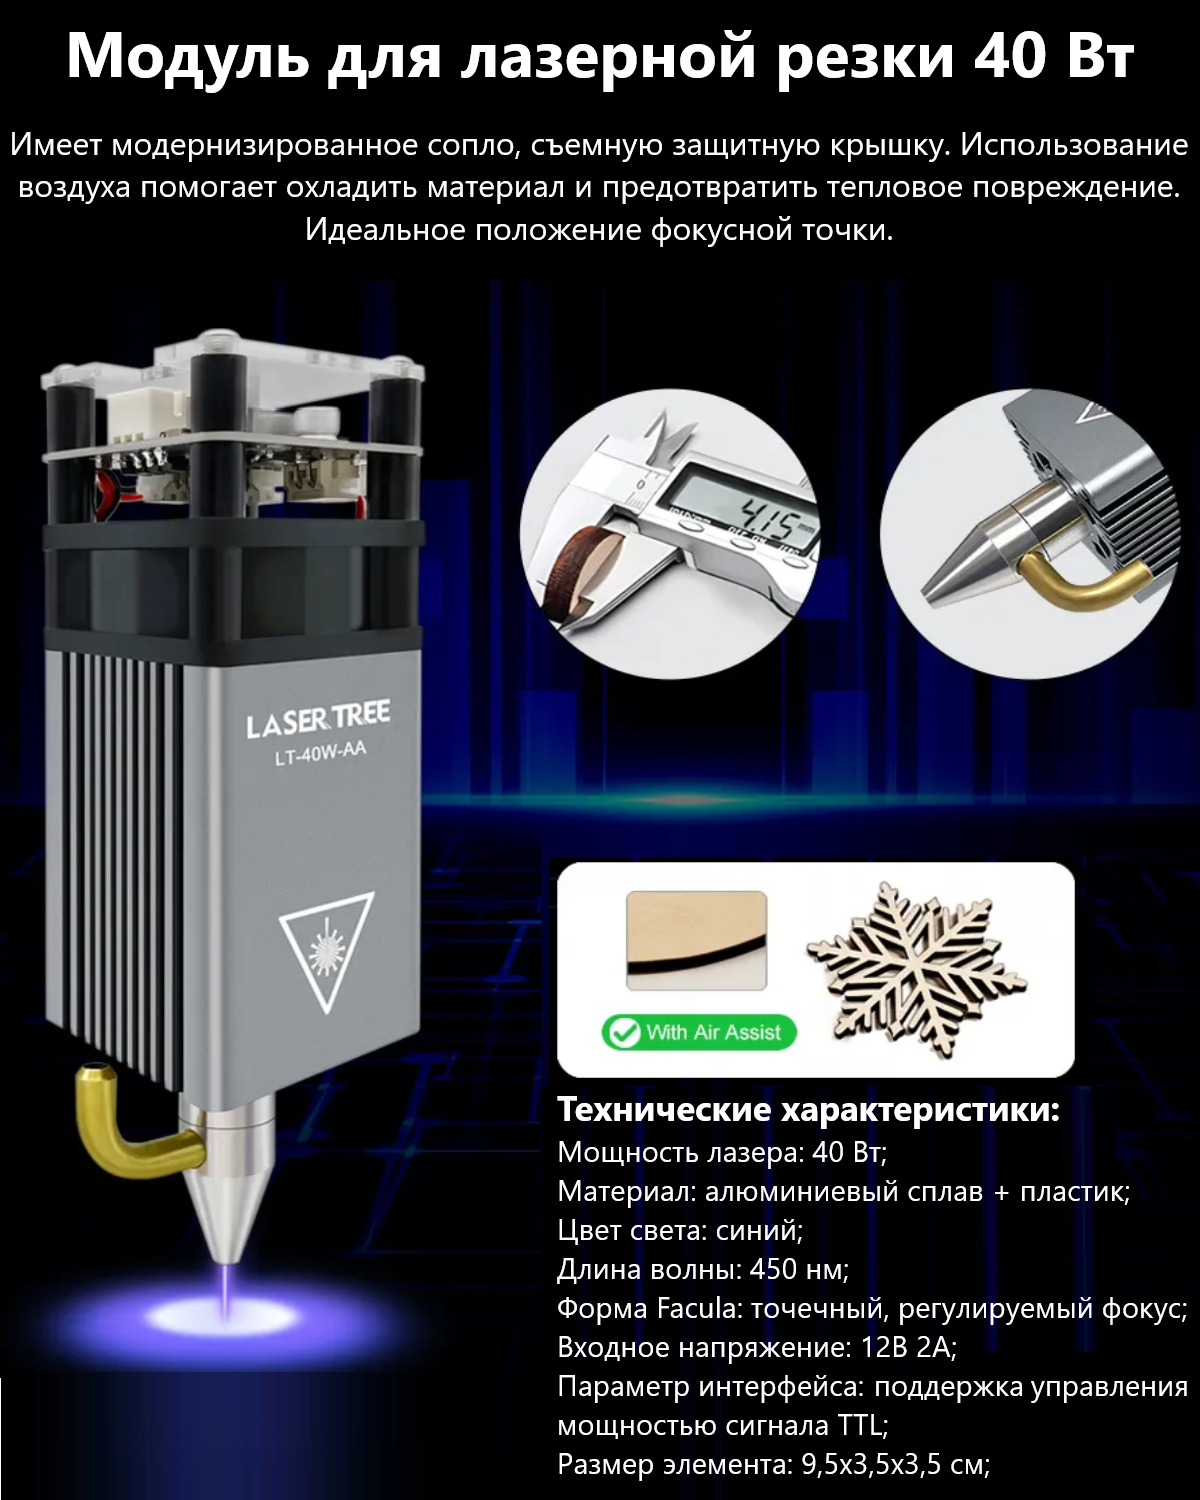 Модуль для лазерной резки / Лазерный модуль для станка LASER TREE 40 Вт 450 нм TTL (Д)